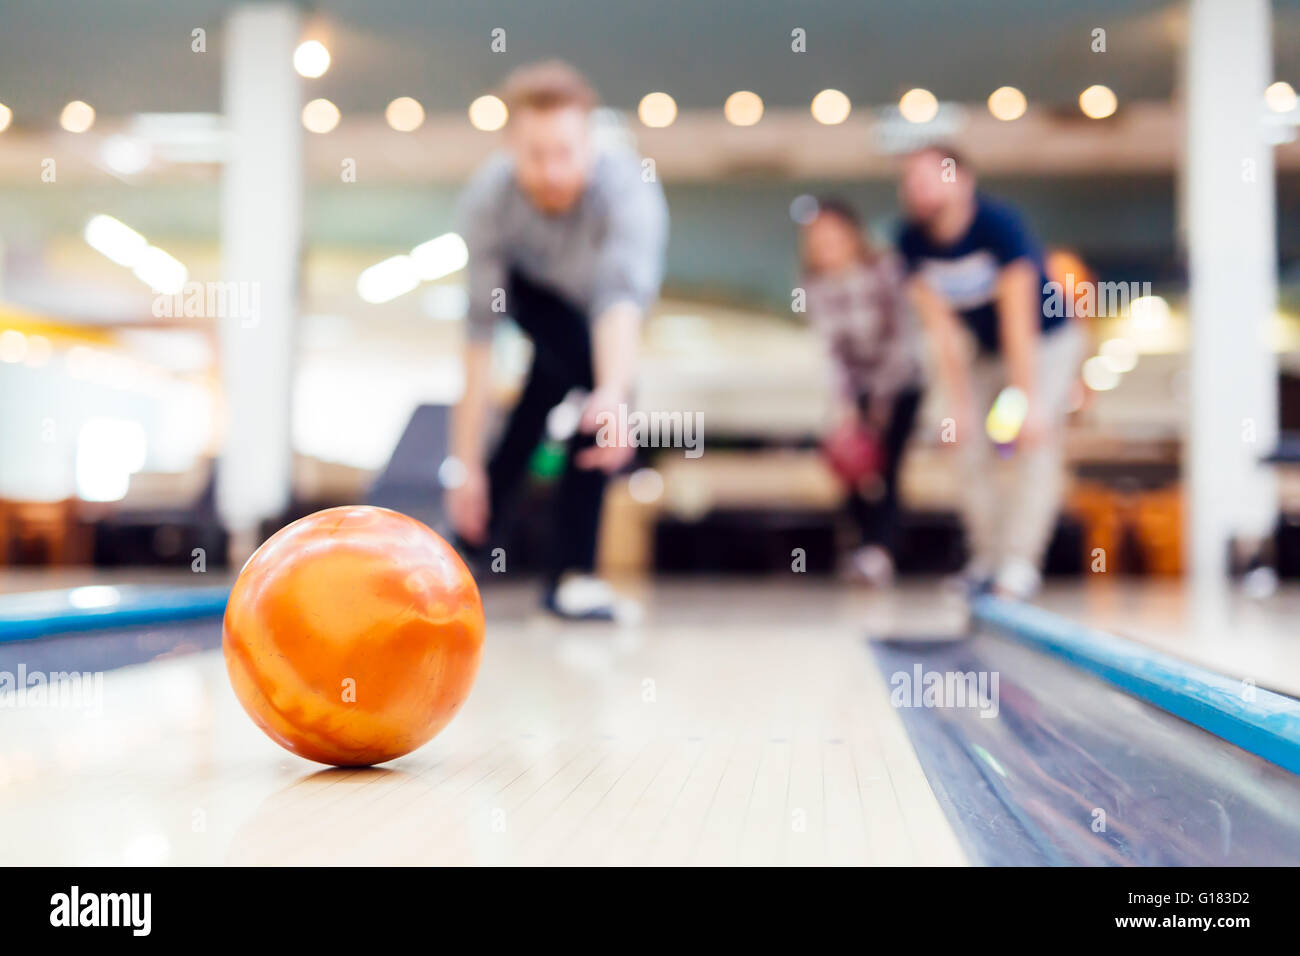 Profité des infrastructures de loisirs de l'amis au club de bowling Banque D'Images